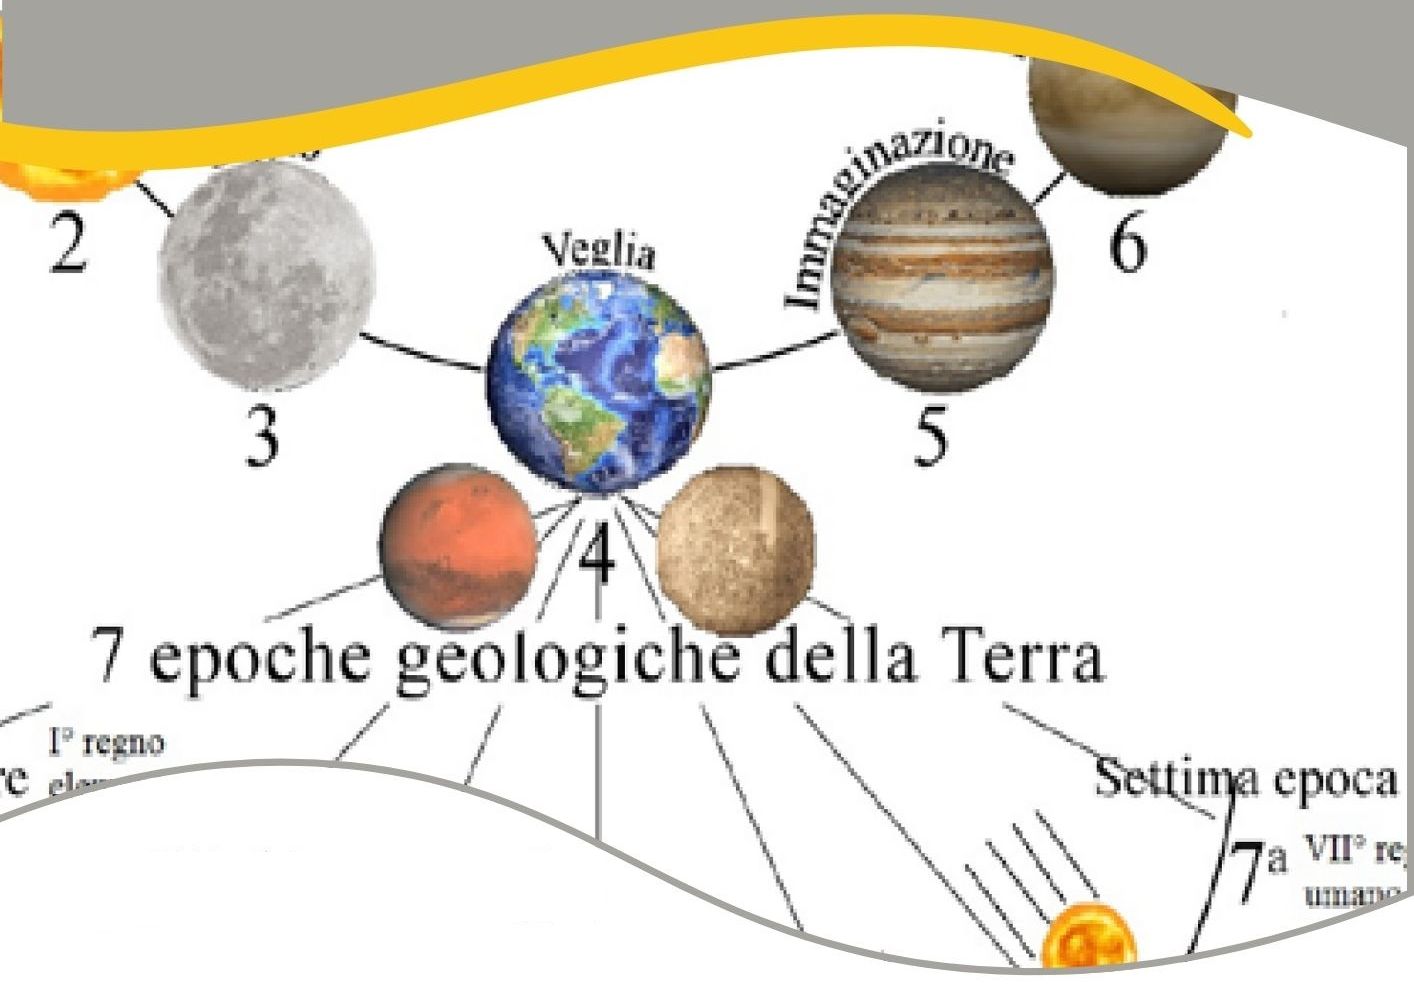 Le epoche geologiche della Terra secondo Rudolf Steiner